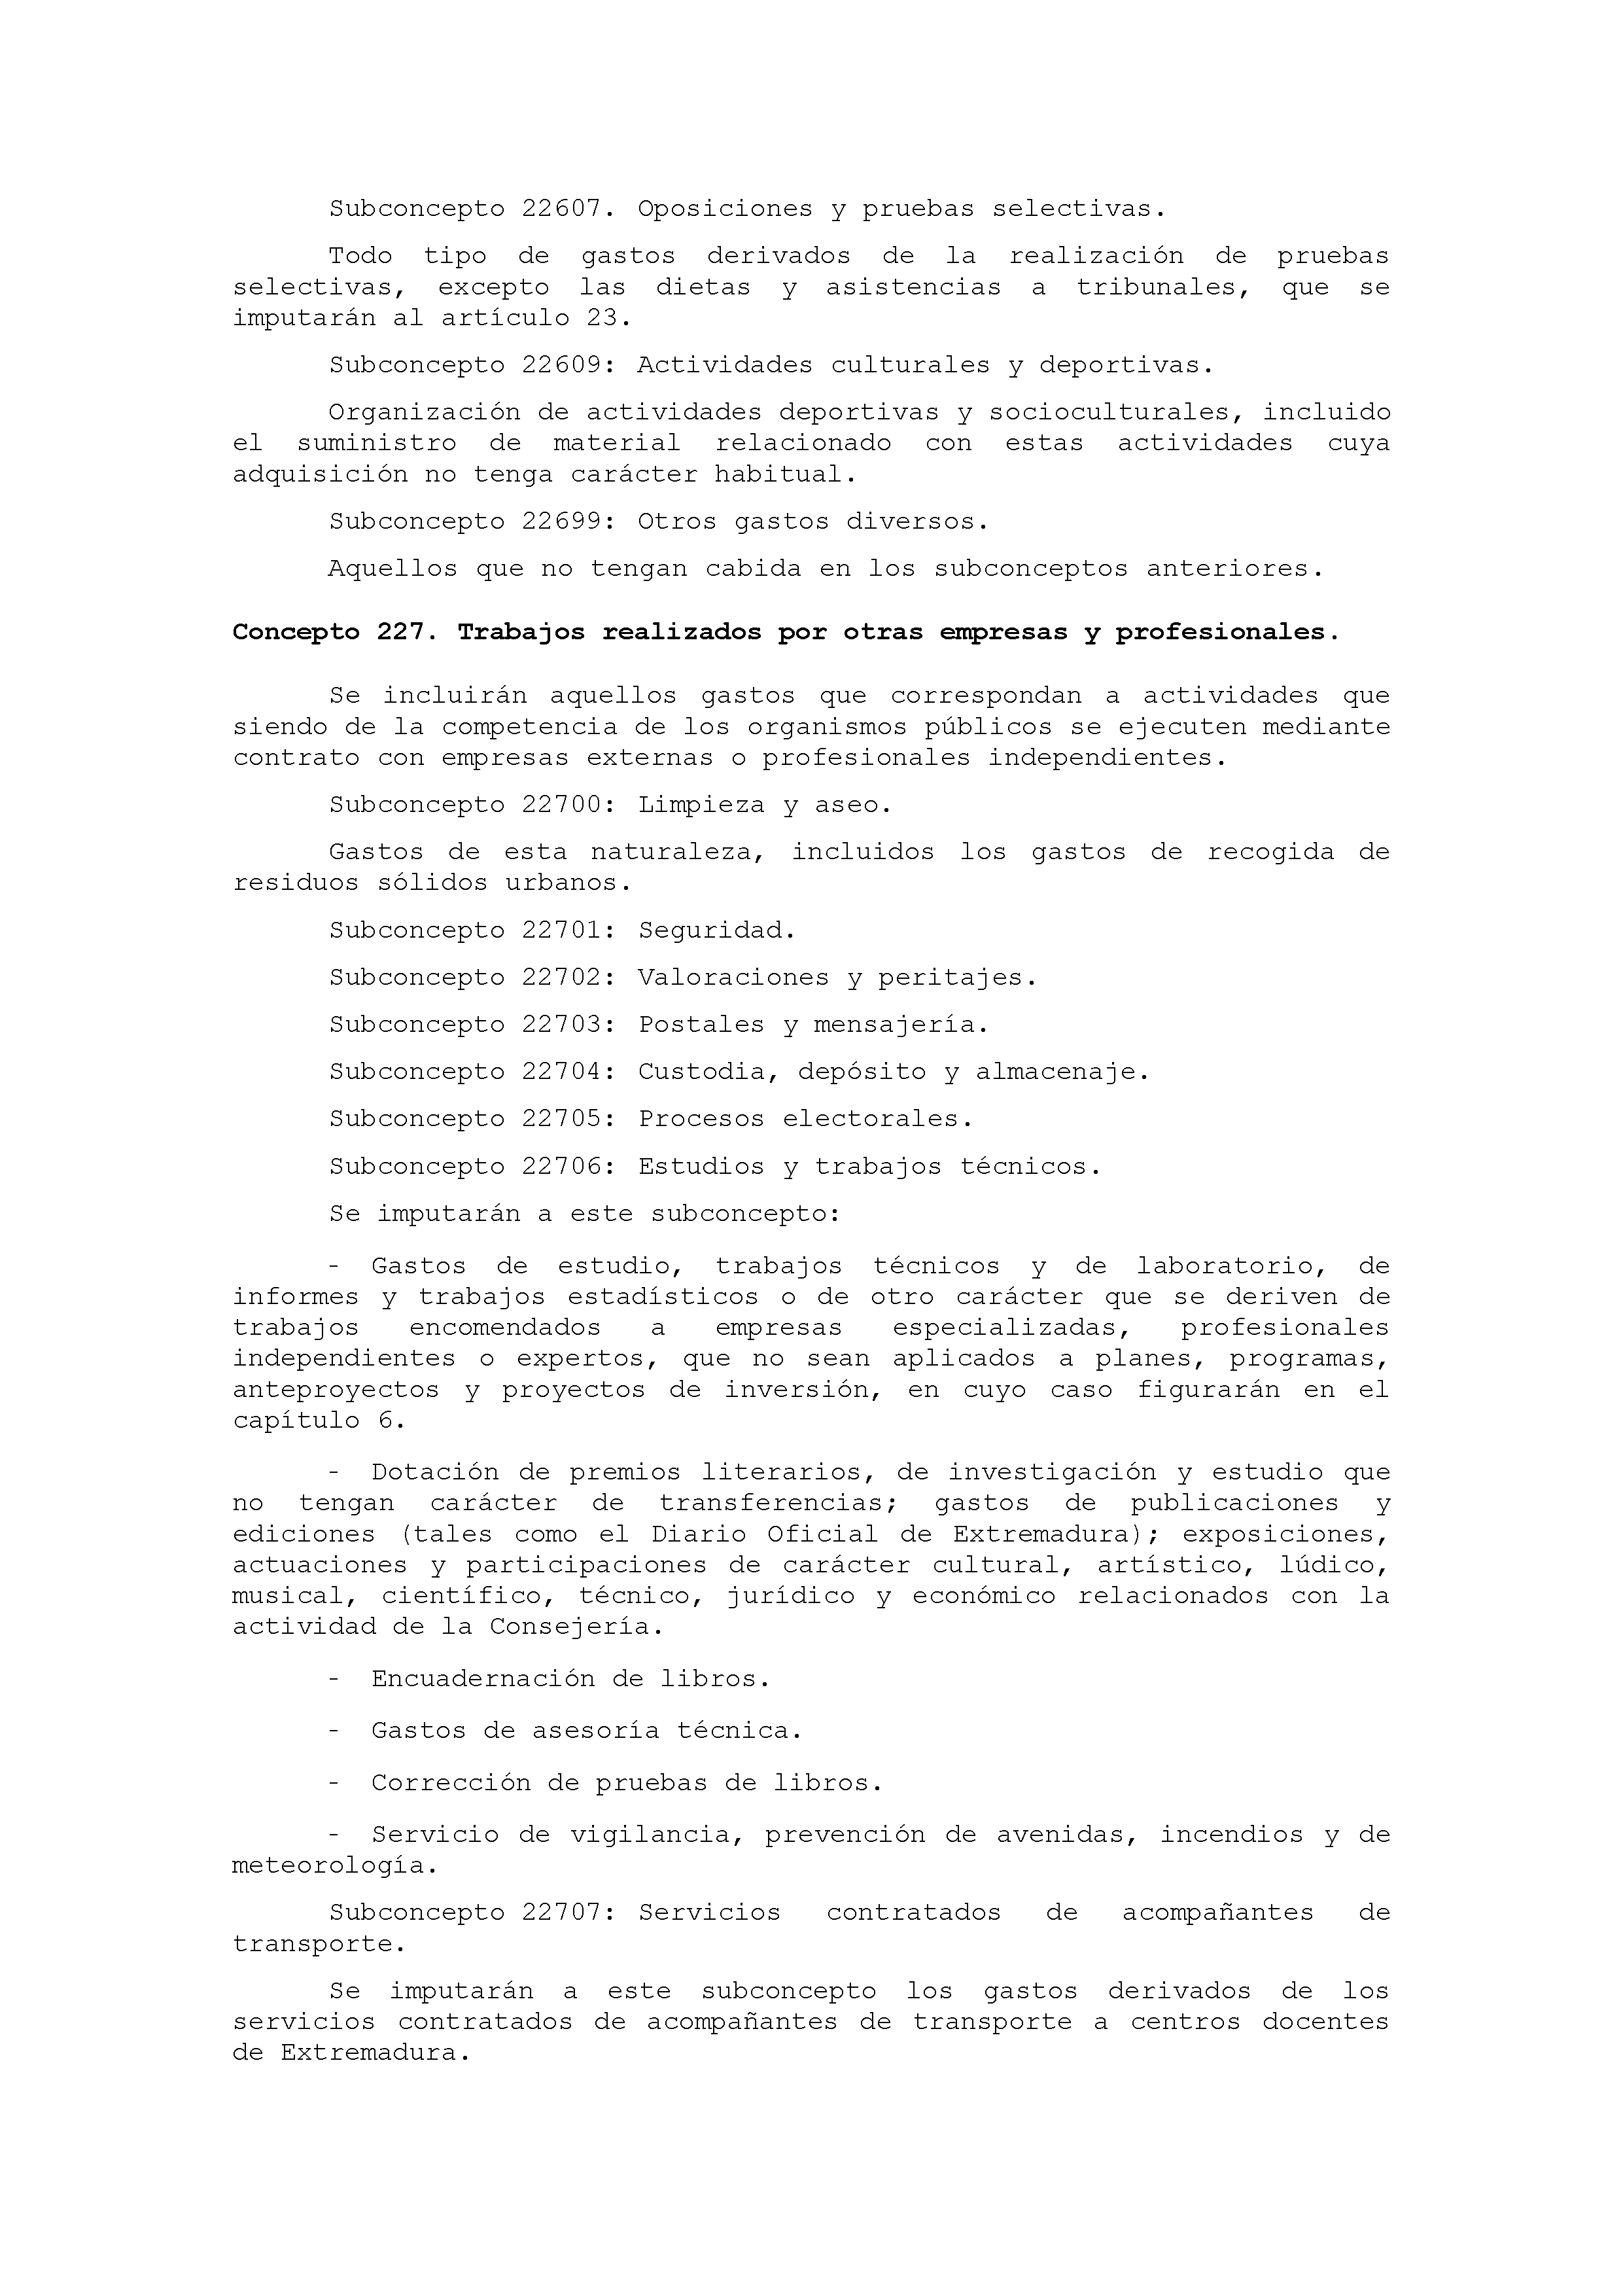 ANEXO IX CÓDIGO DE LA CLASIFICACIÓN ECONÓMICA DE LOS GASTOS PÚBLICOS Pag 22